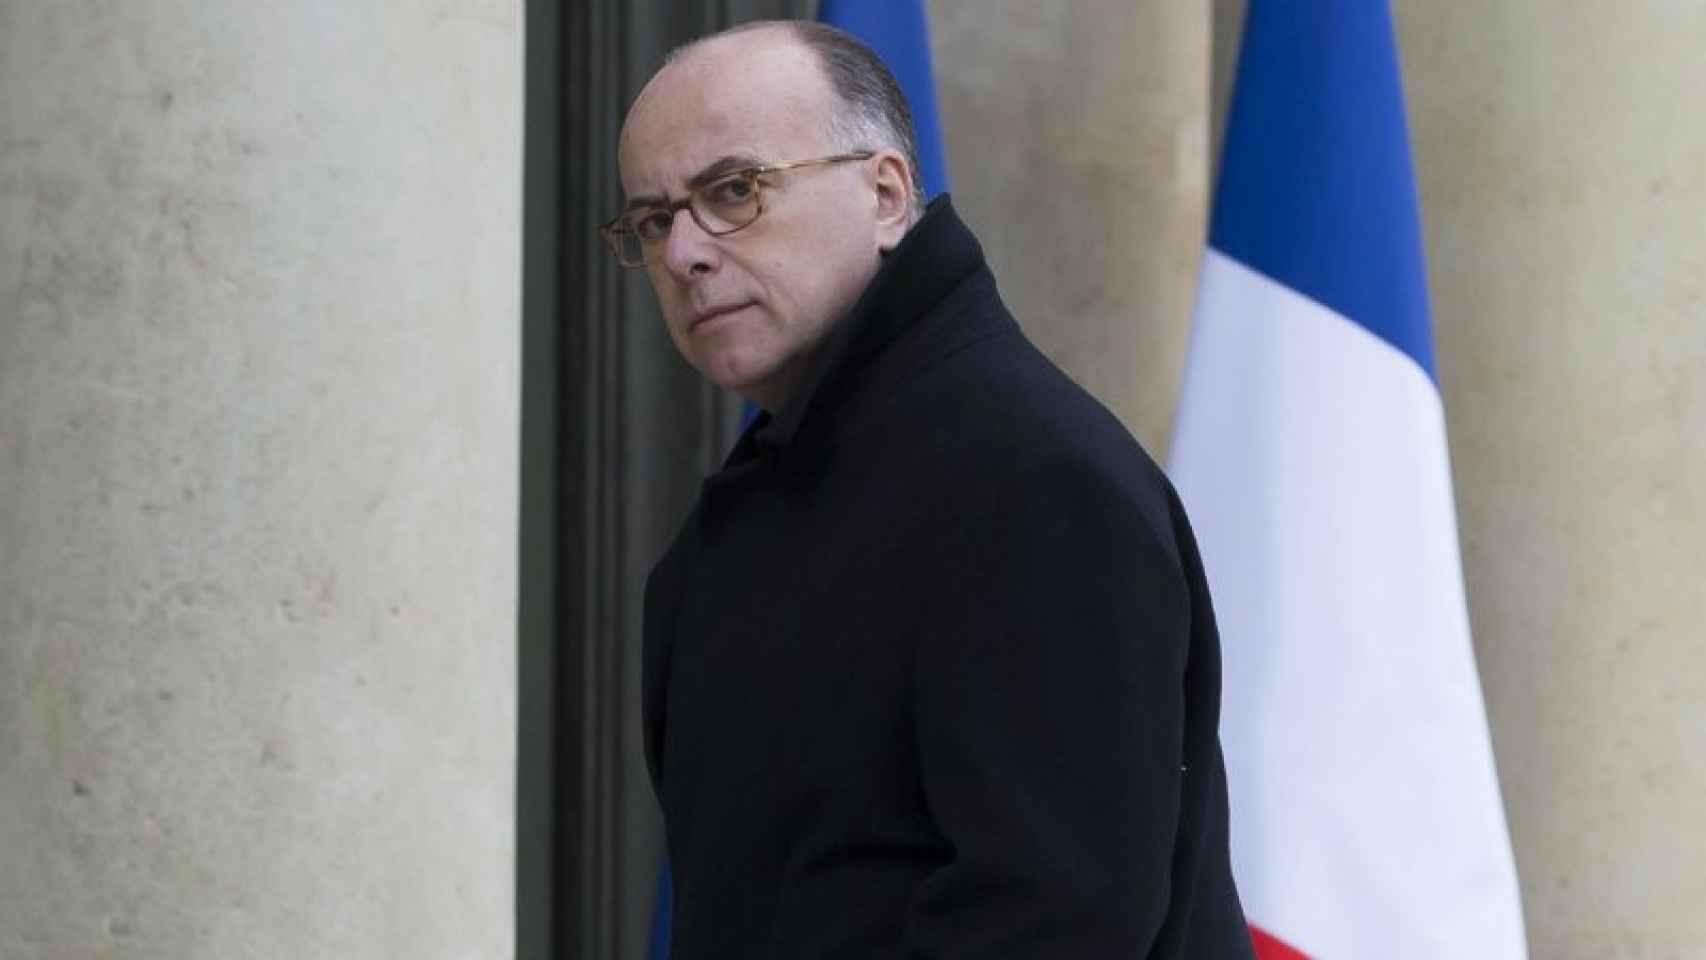 El ministro del Interior de Francia, Bernard Cazeneuve, tras pronunciarse sobre los atentados en Bruselas.